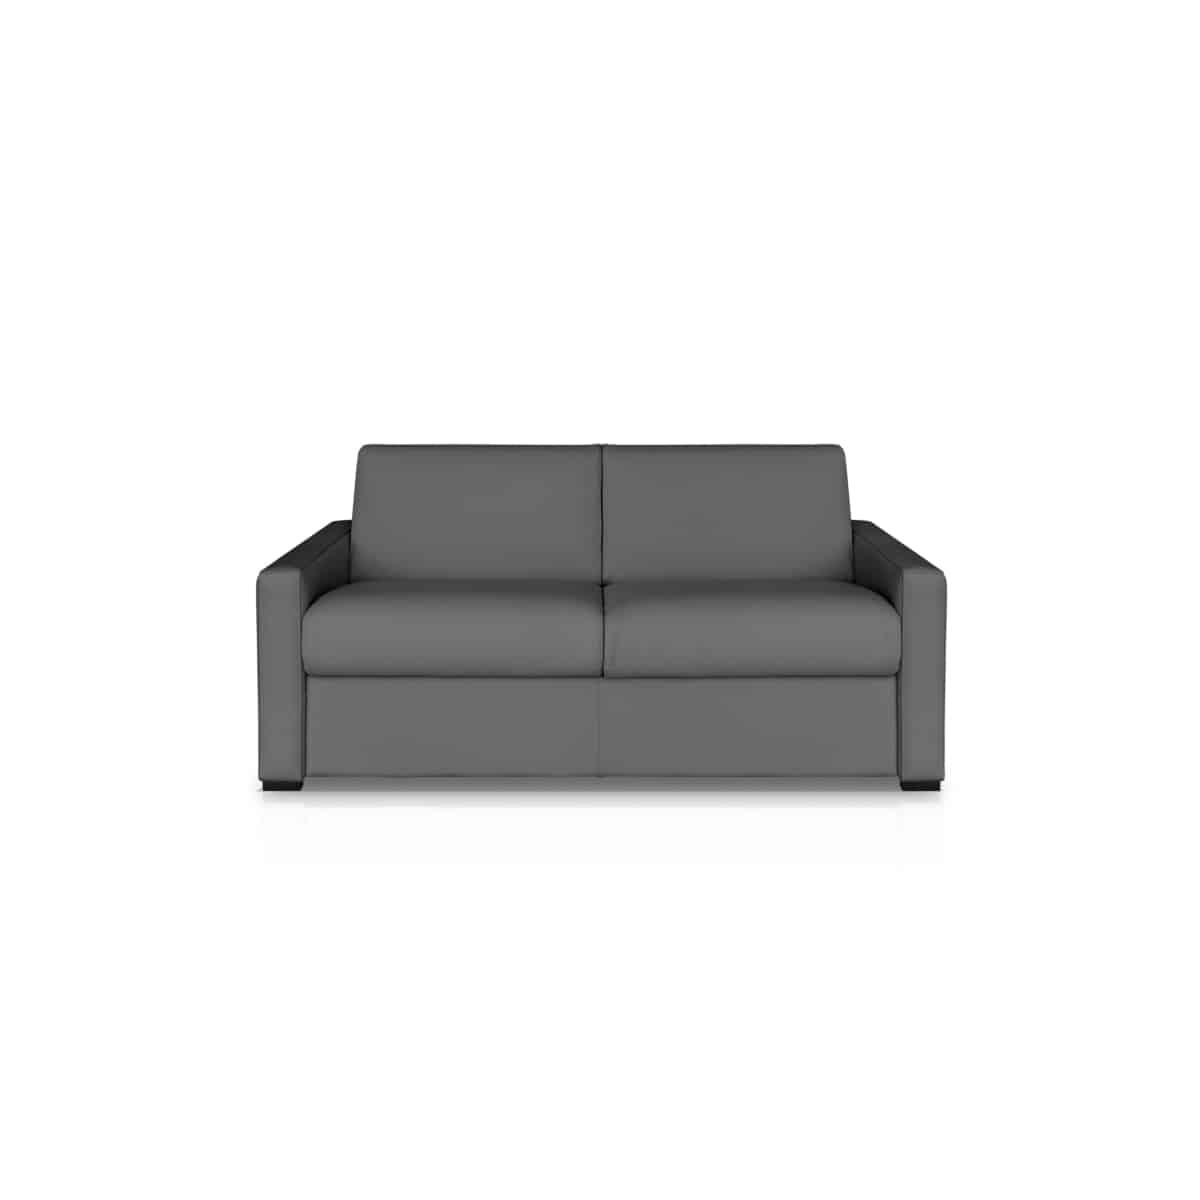 Foglie stampato divano Mat antiscivolo con cinghie divano